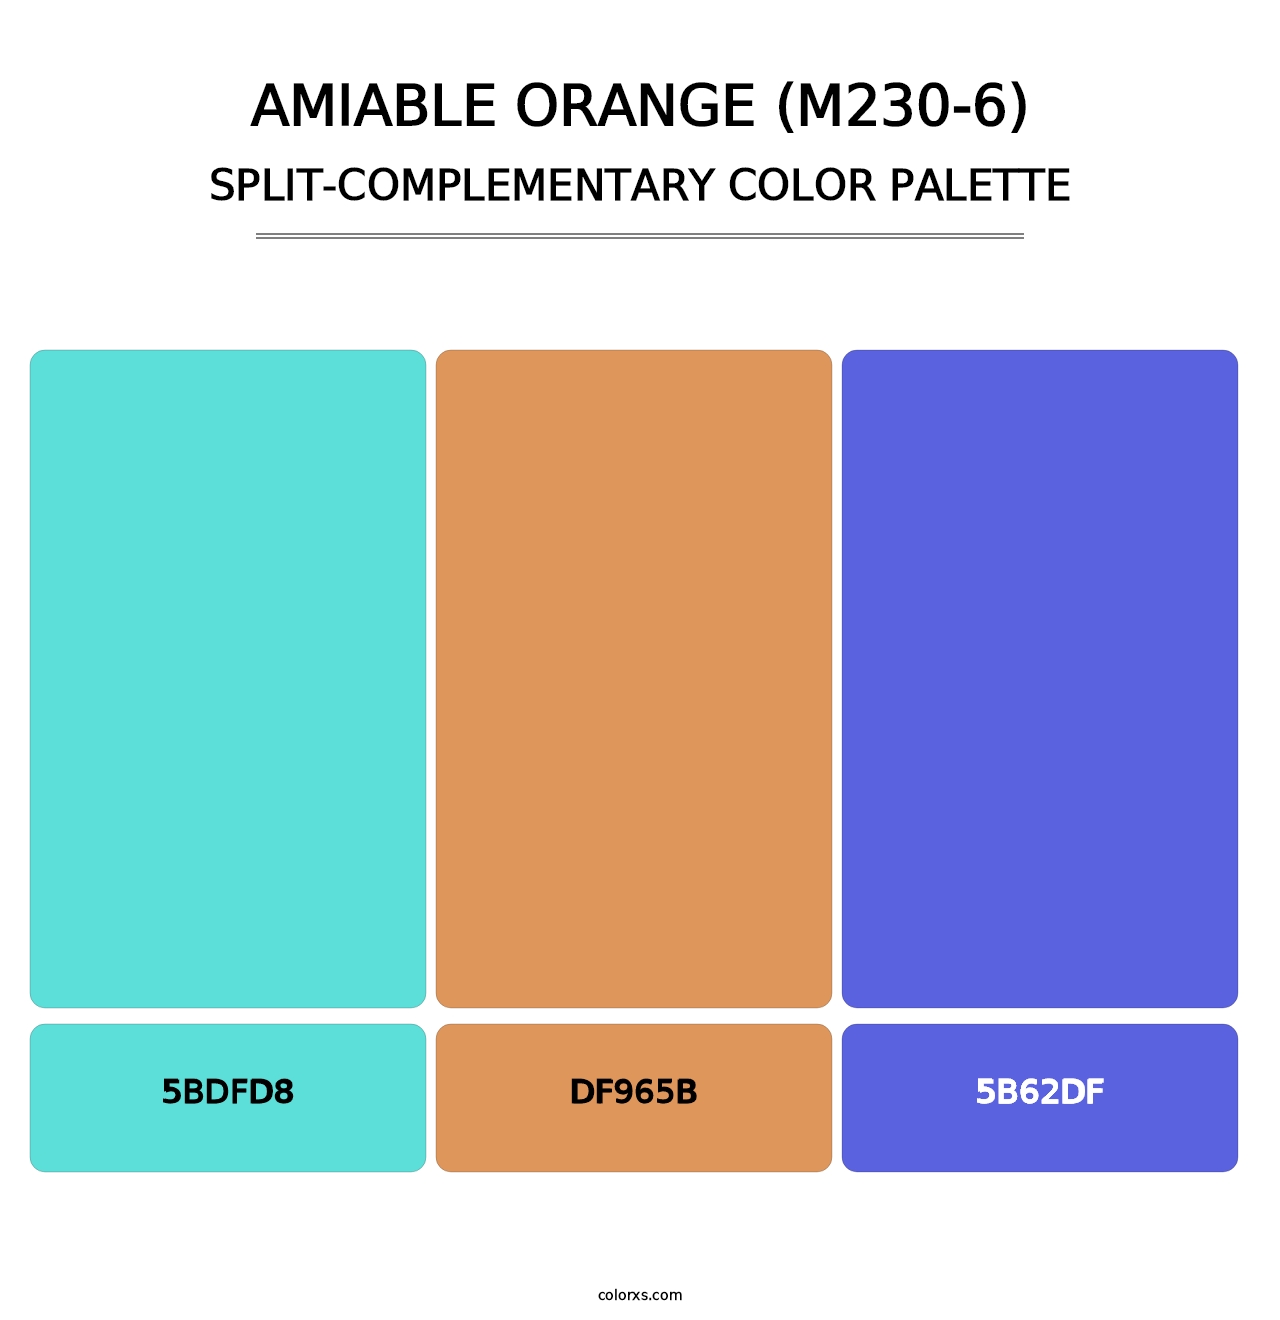 Amiable Orange (M230-6) - Split-Complementary Color Palette